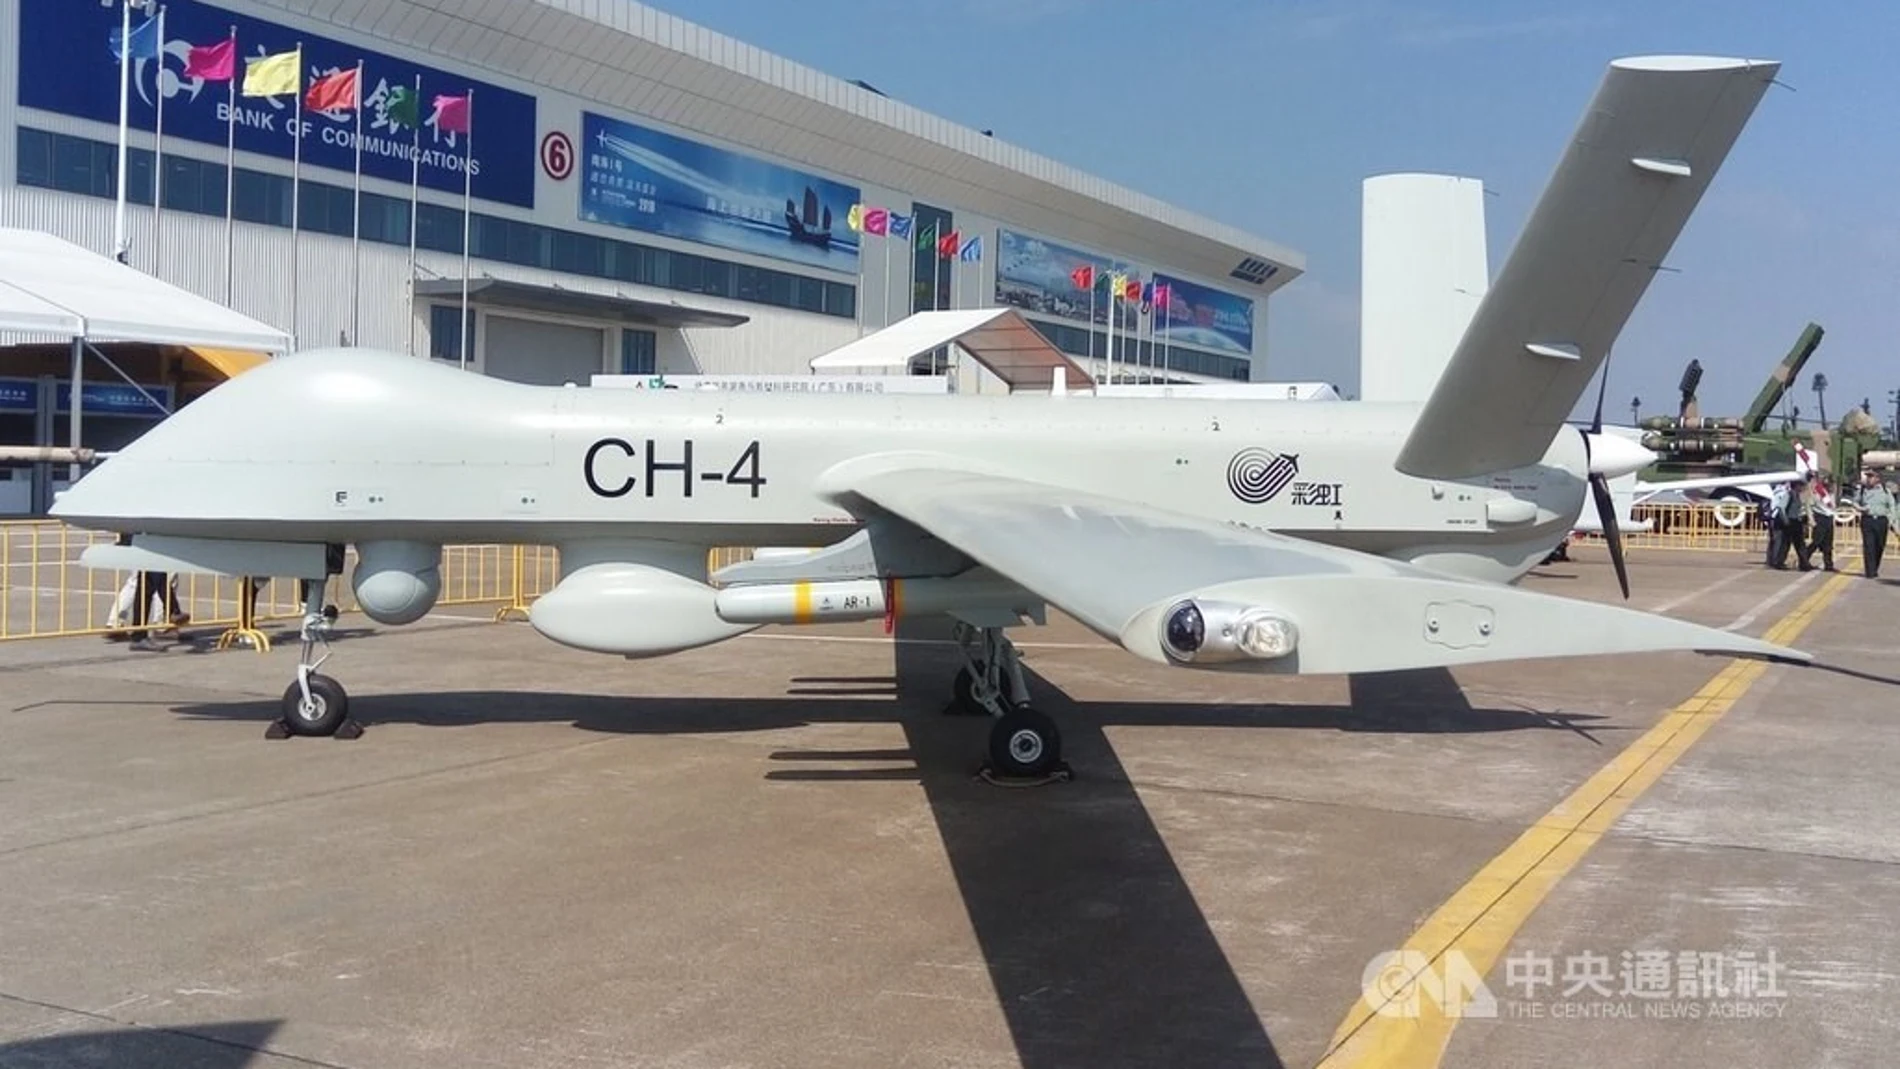 Un drone UCAV Rainbow CH-4 exhibido recientemente durante una exhibición aérea en Zhuhai